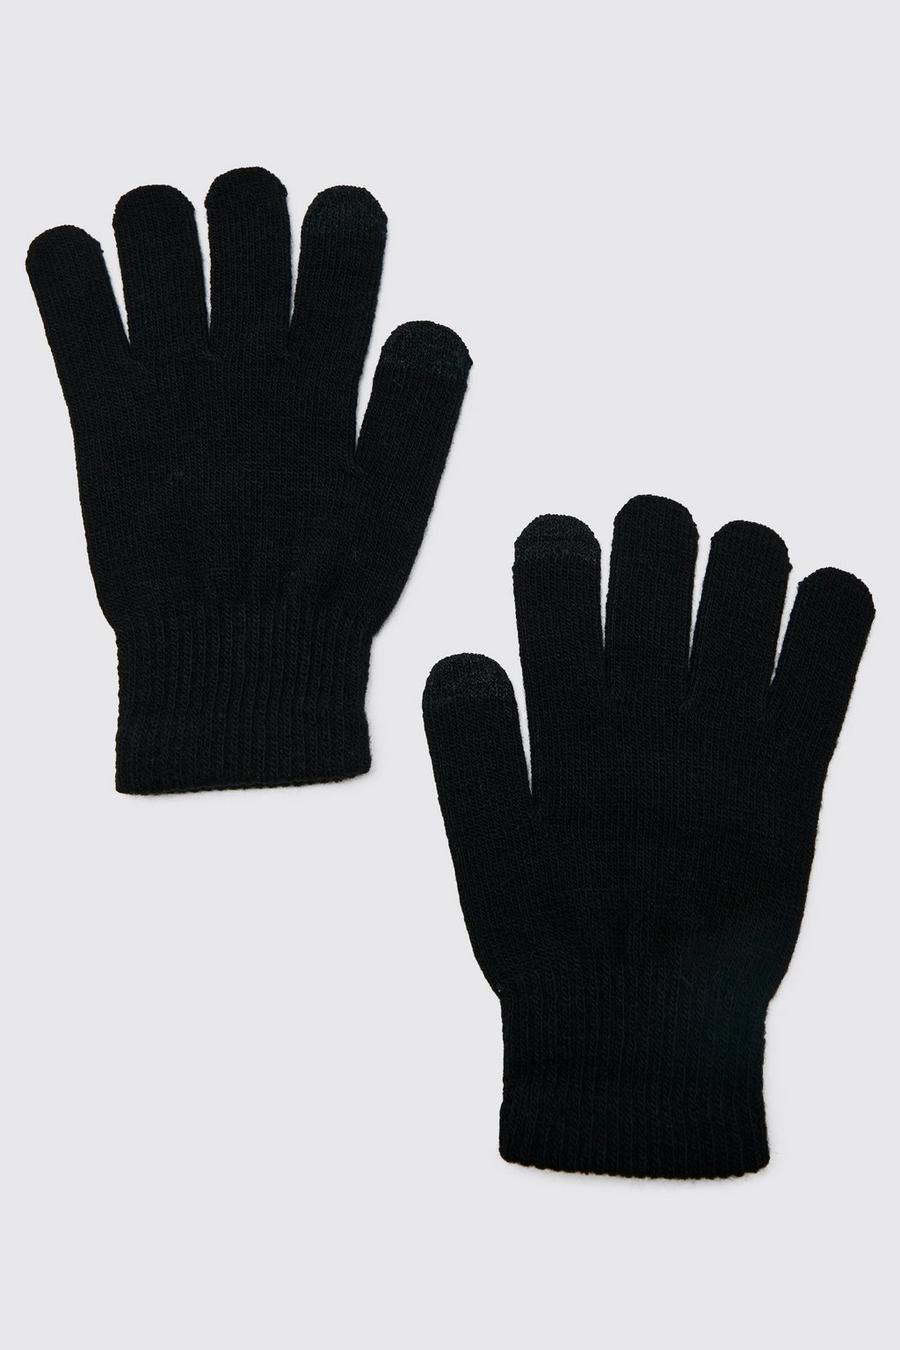 Buy Boohoo Gloves in Saudi, UAE, Kuwait and Qatar